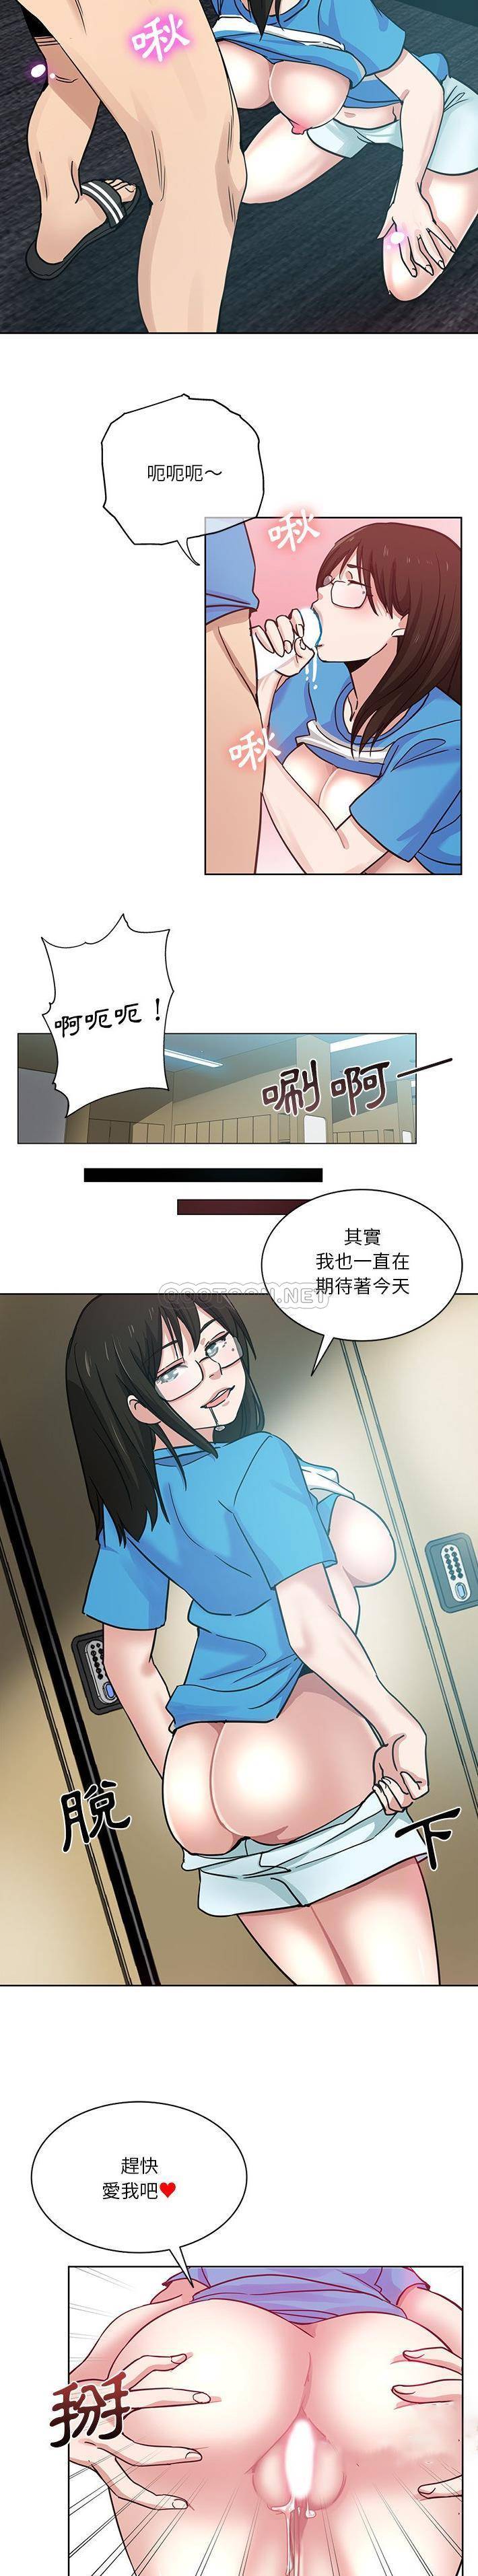 韩国污漫画 危險純友誼 第18话 13